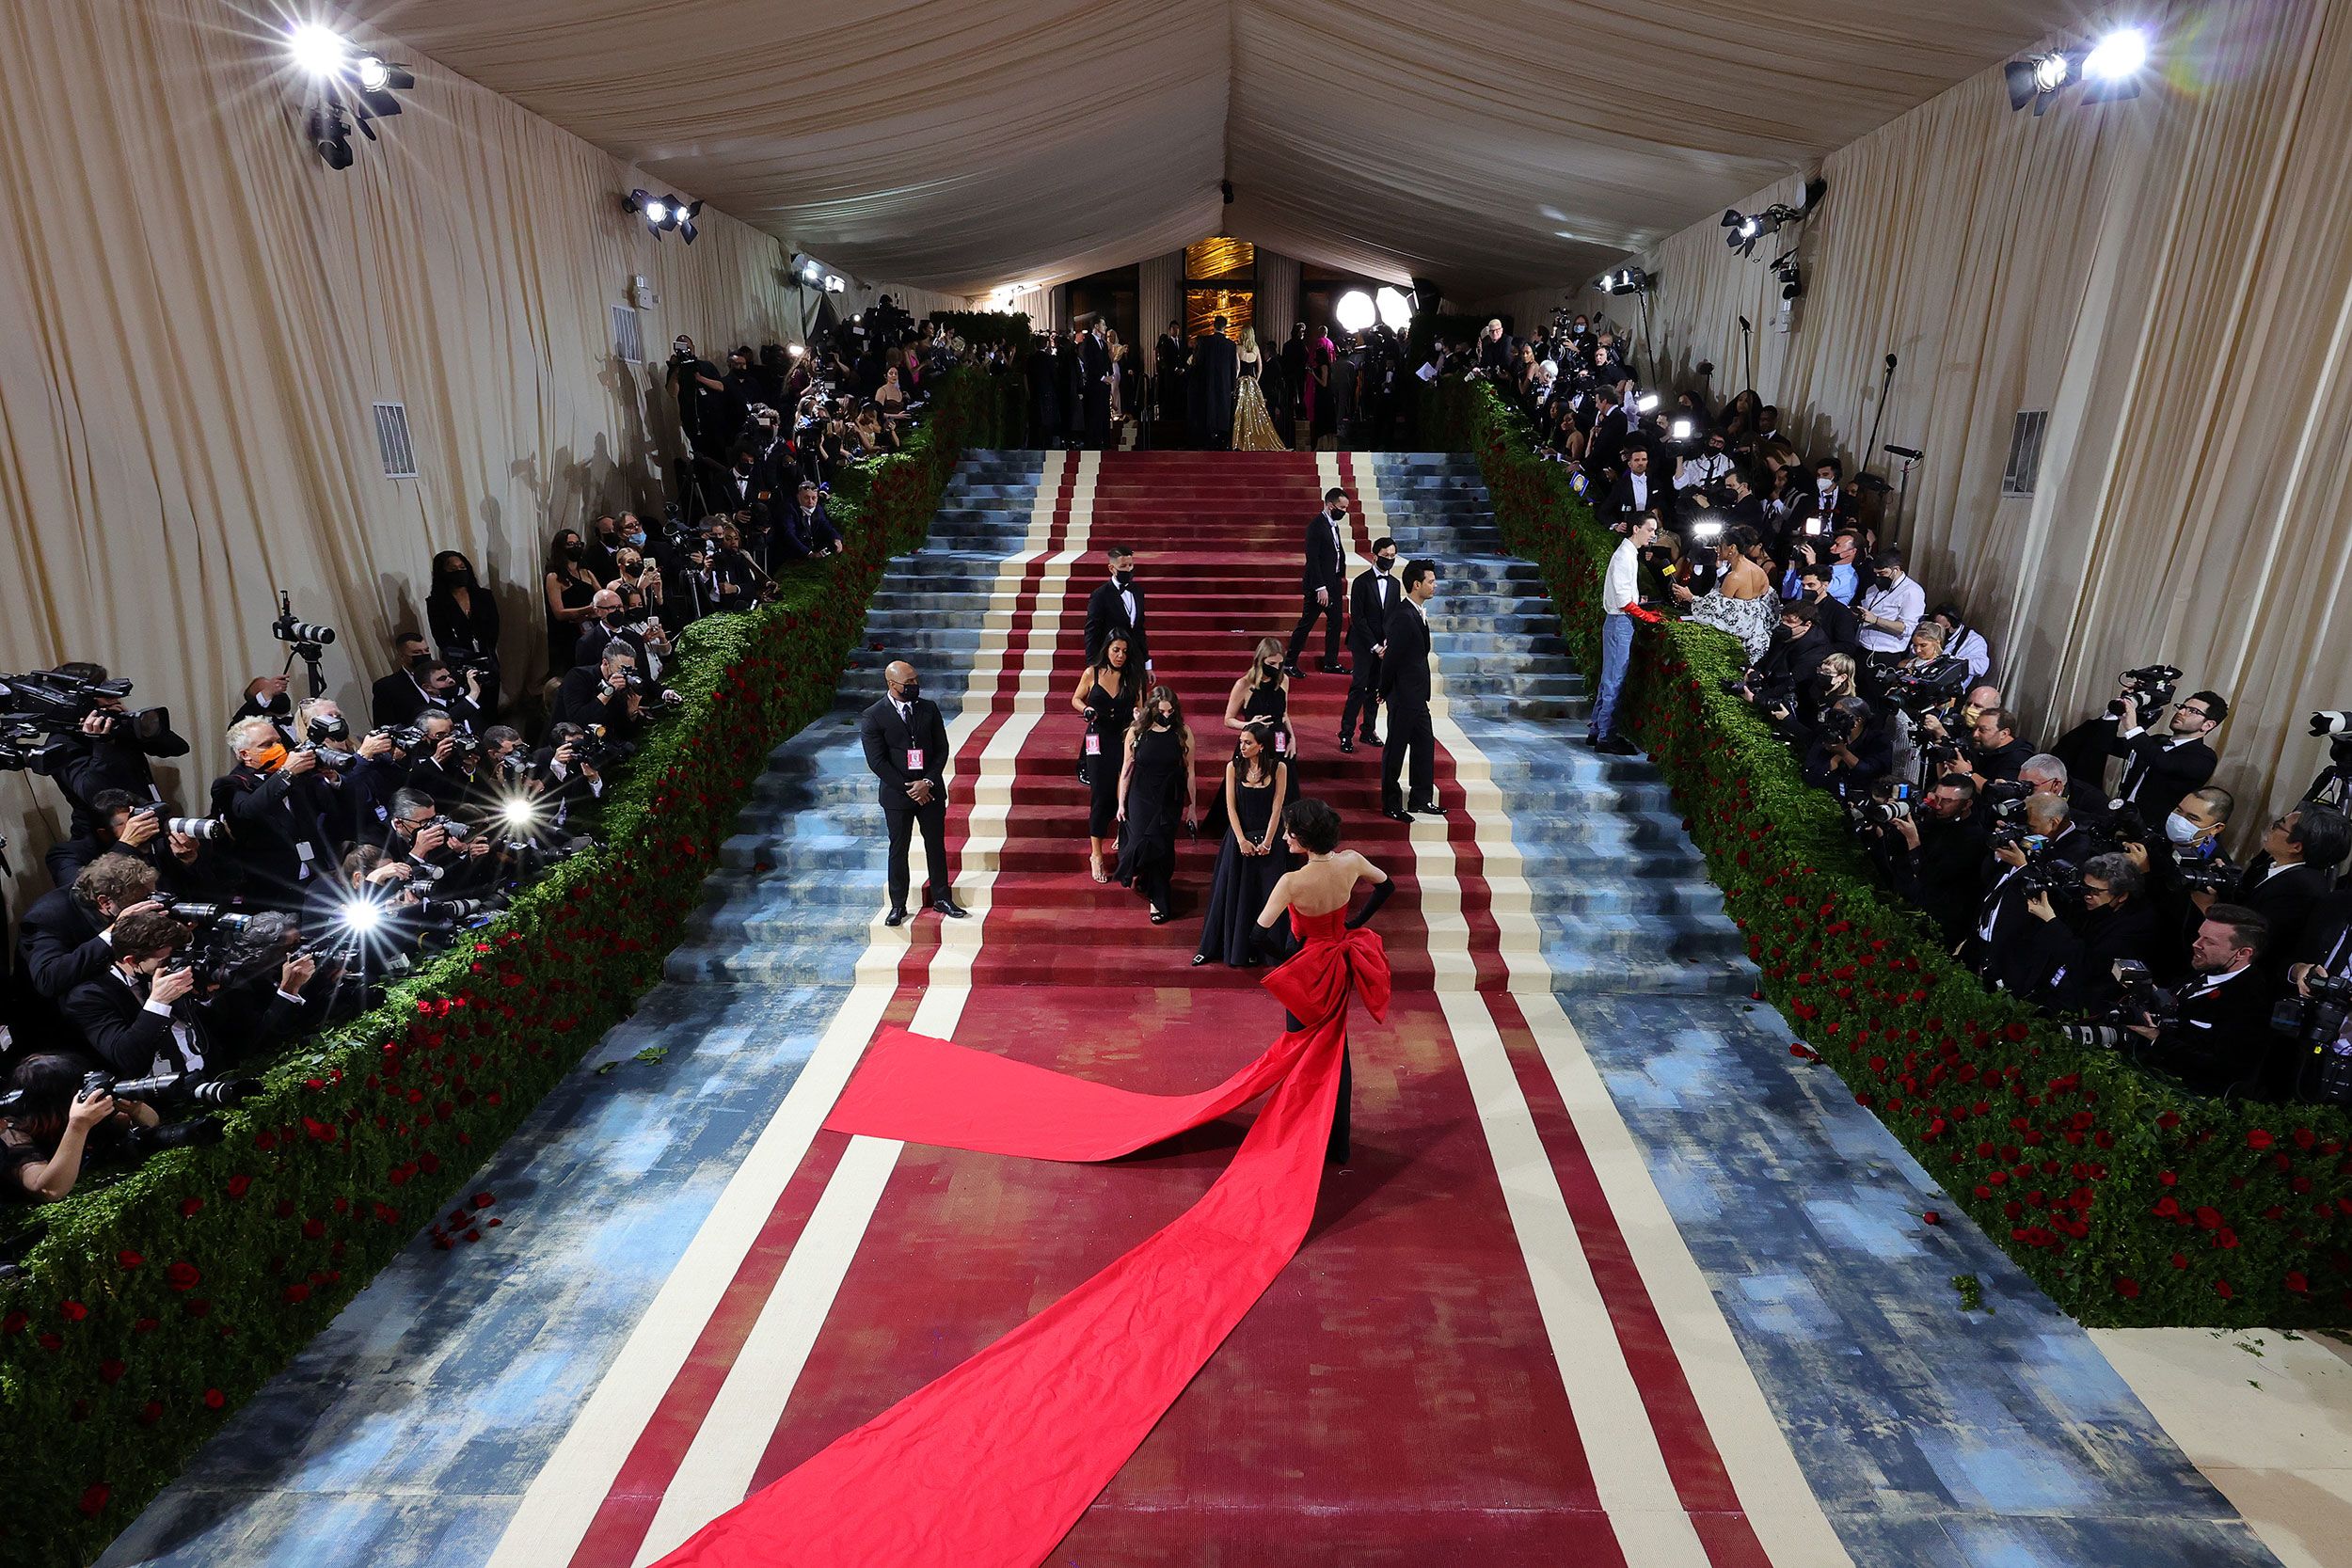 Met Gala 2022: Red carpet looks photo gallery